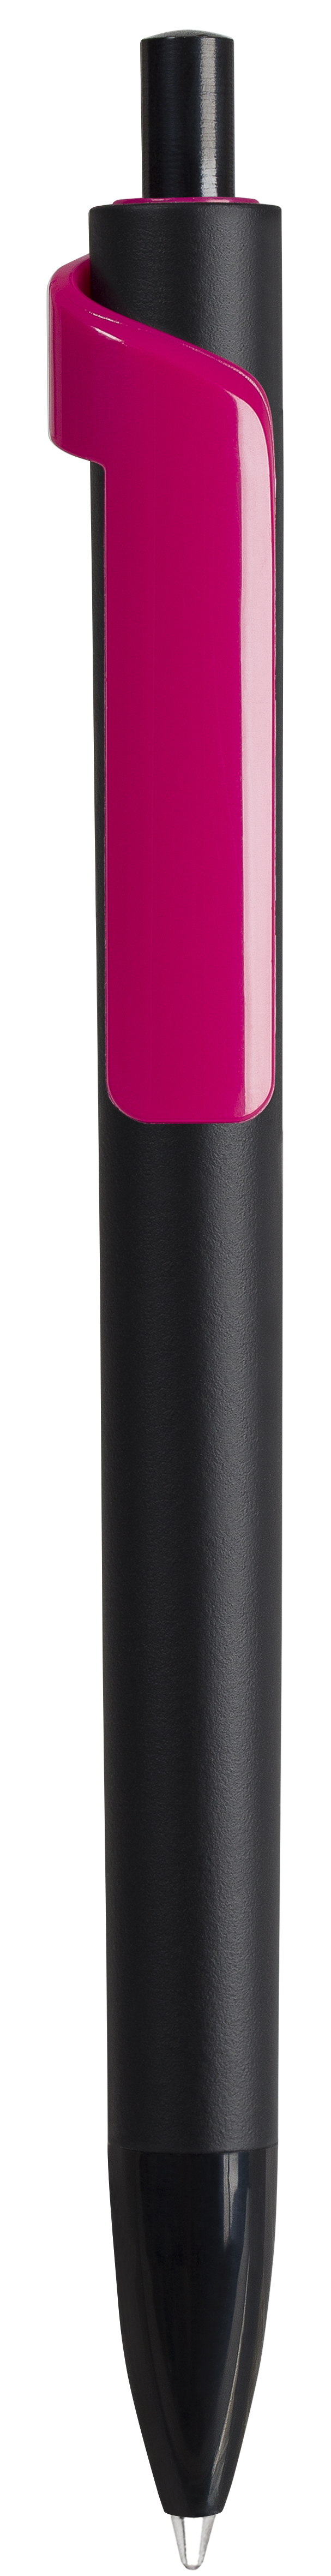 Ручка шариковая FORTE SOFT BLACK, черный/розовый, пластик, покрытие soft touch